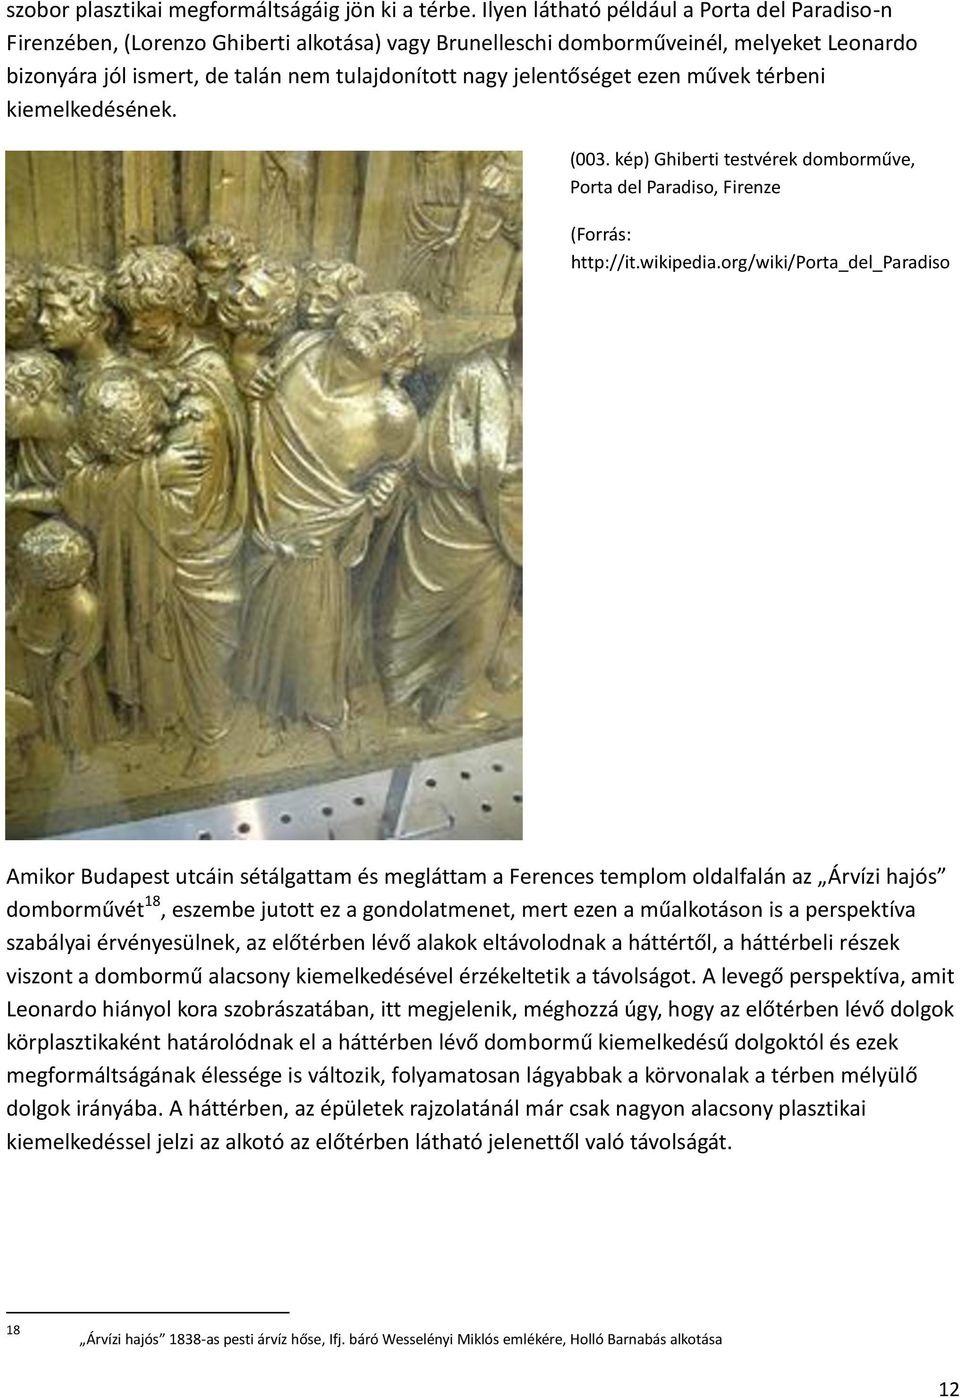 jelentőséget ezen művek térbeni kiemelkedésének. (003. kép) Ghiberti testvérek domborműve, Porta del Paradiso, Firenze (Forrás: http://it.wikipedia.